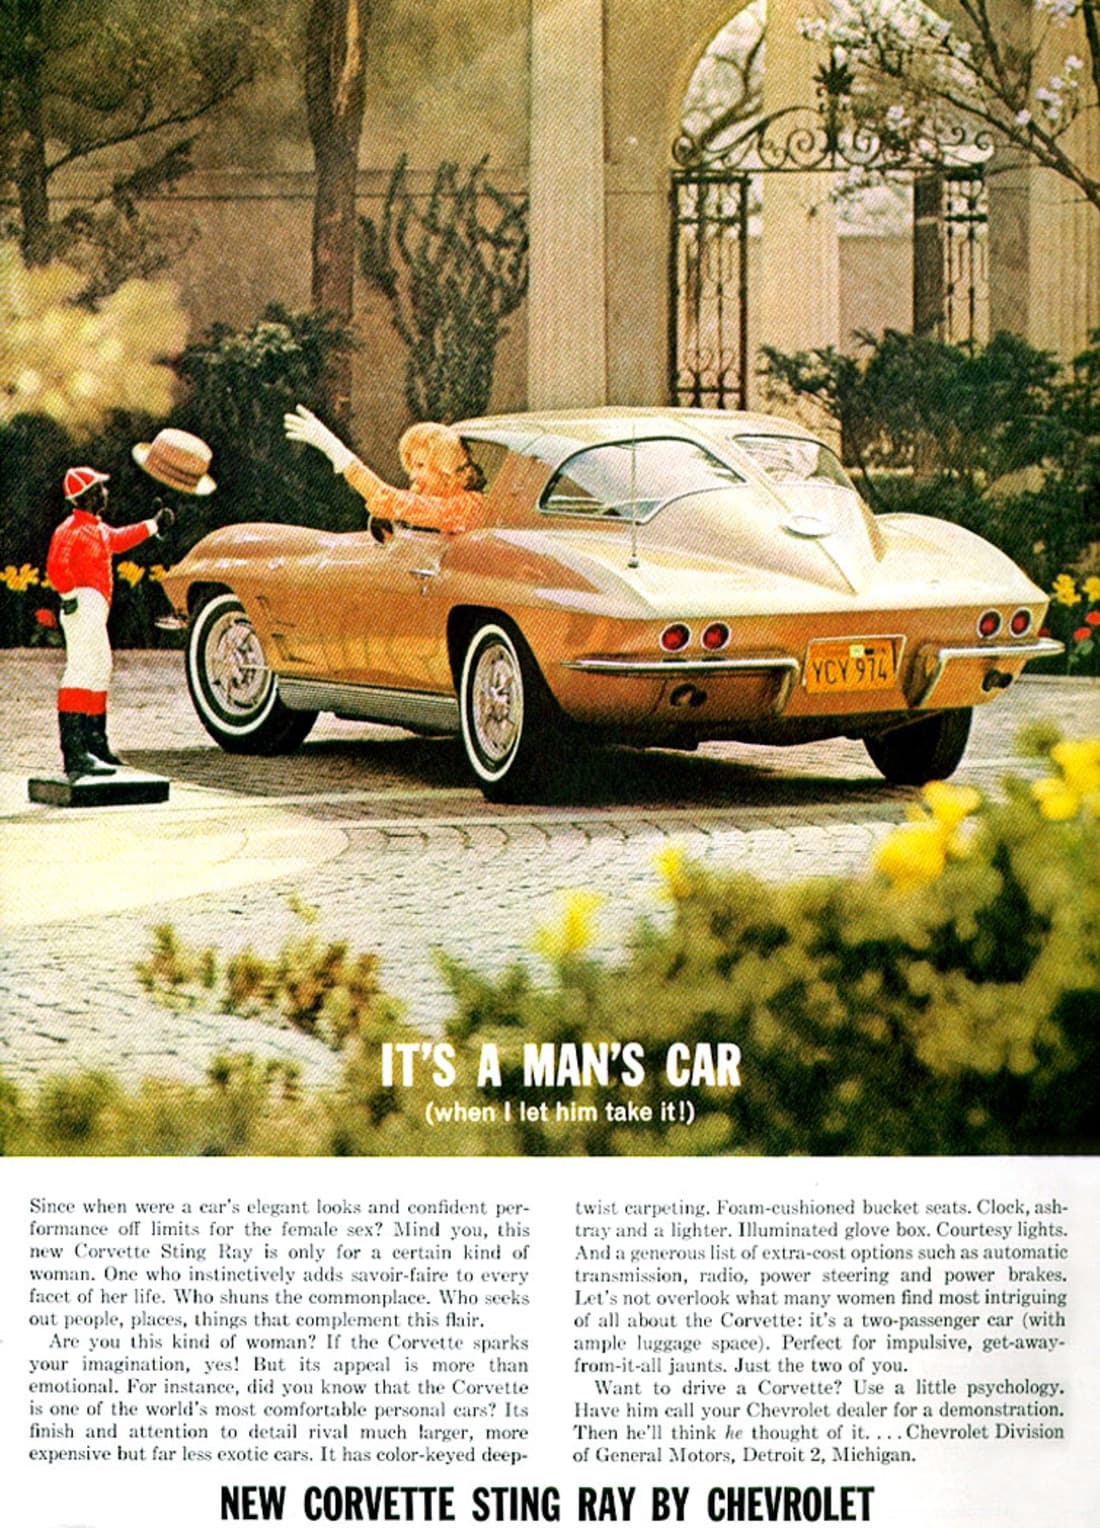 1963 Corvette Ad